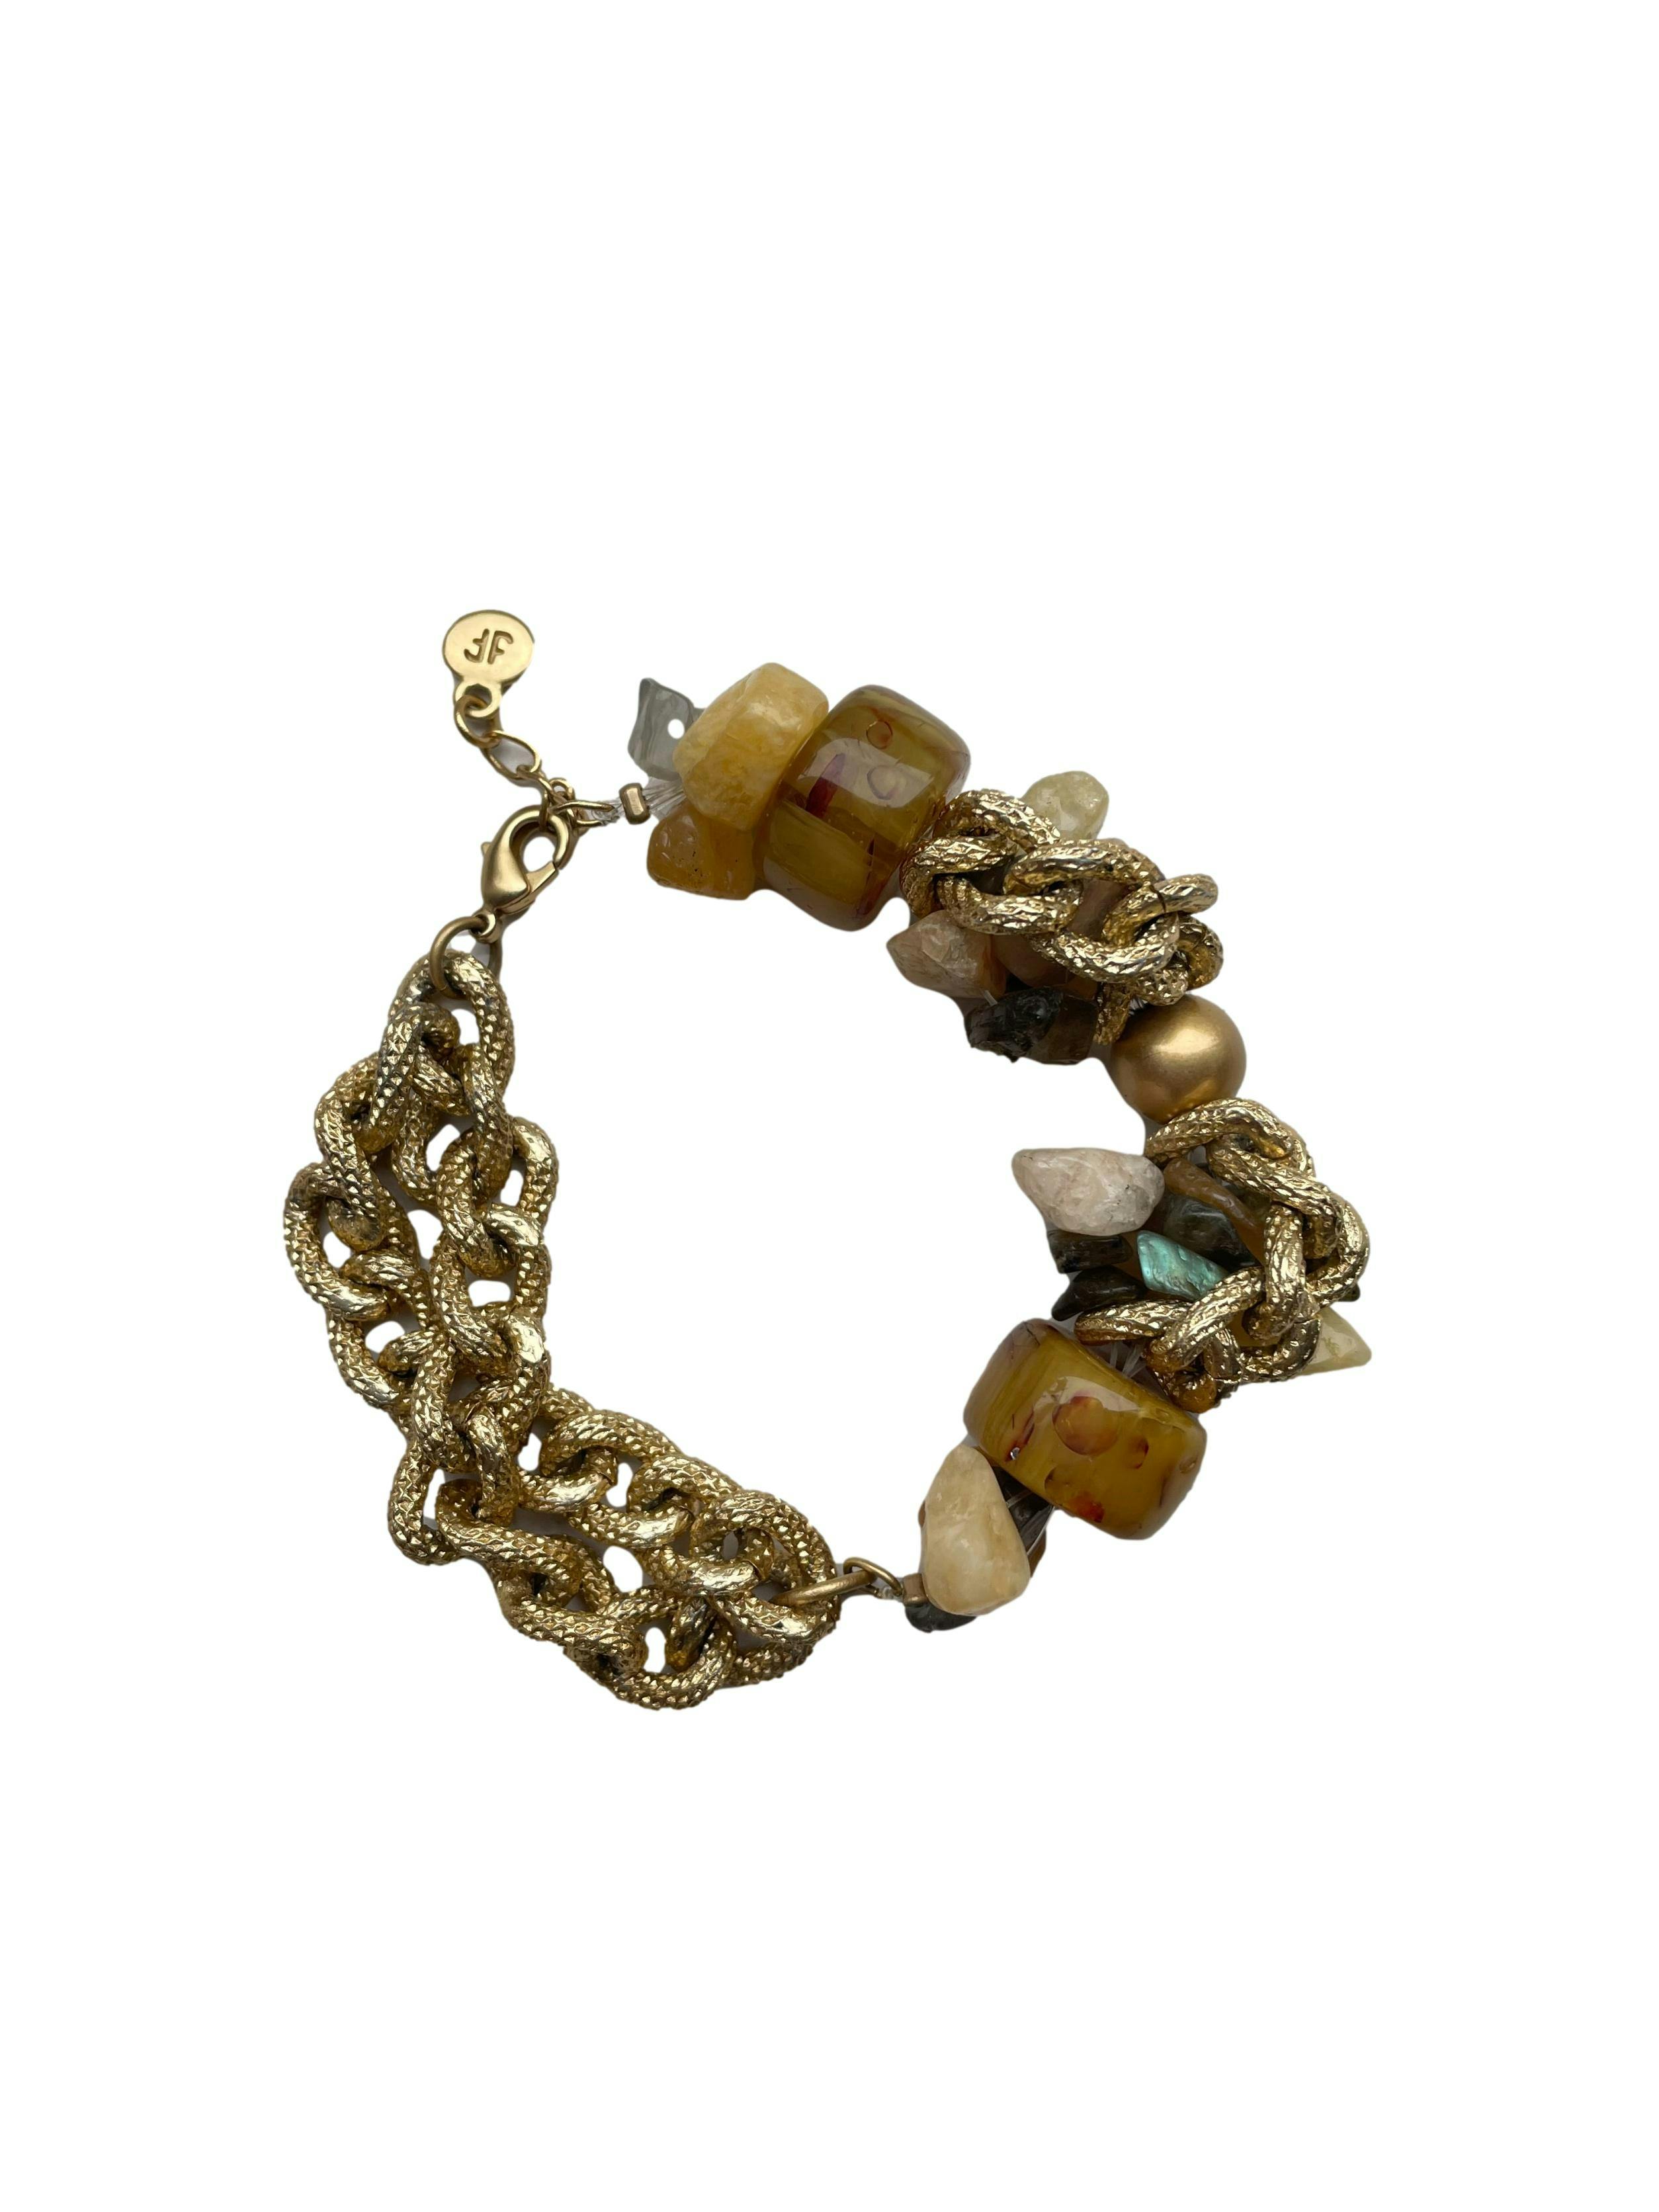 Pulsera Finart dorada con cadenas y cuentas tipo piedras en tonos tierra. Con bolsita protectora. Largo 20cm. 